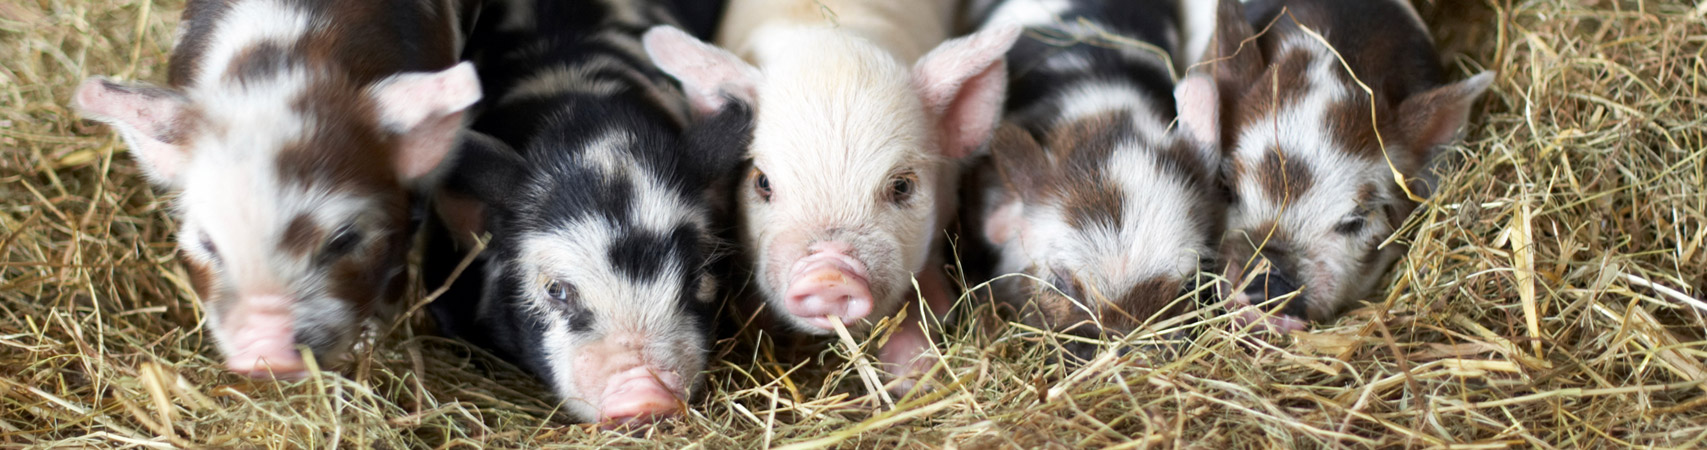 newborn piglets